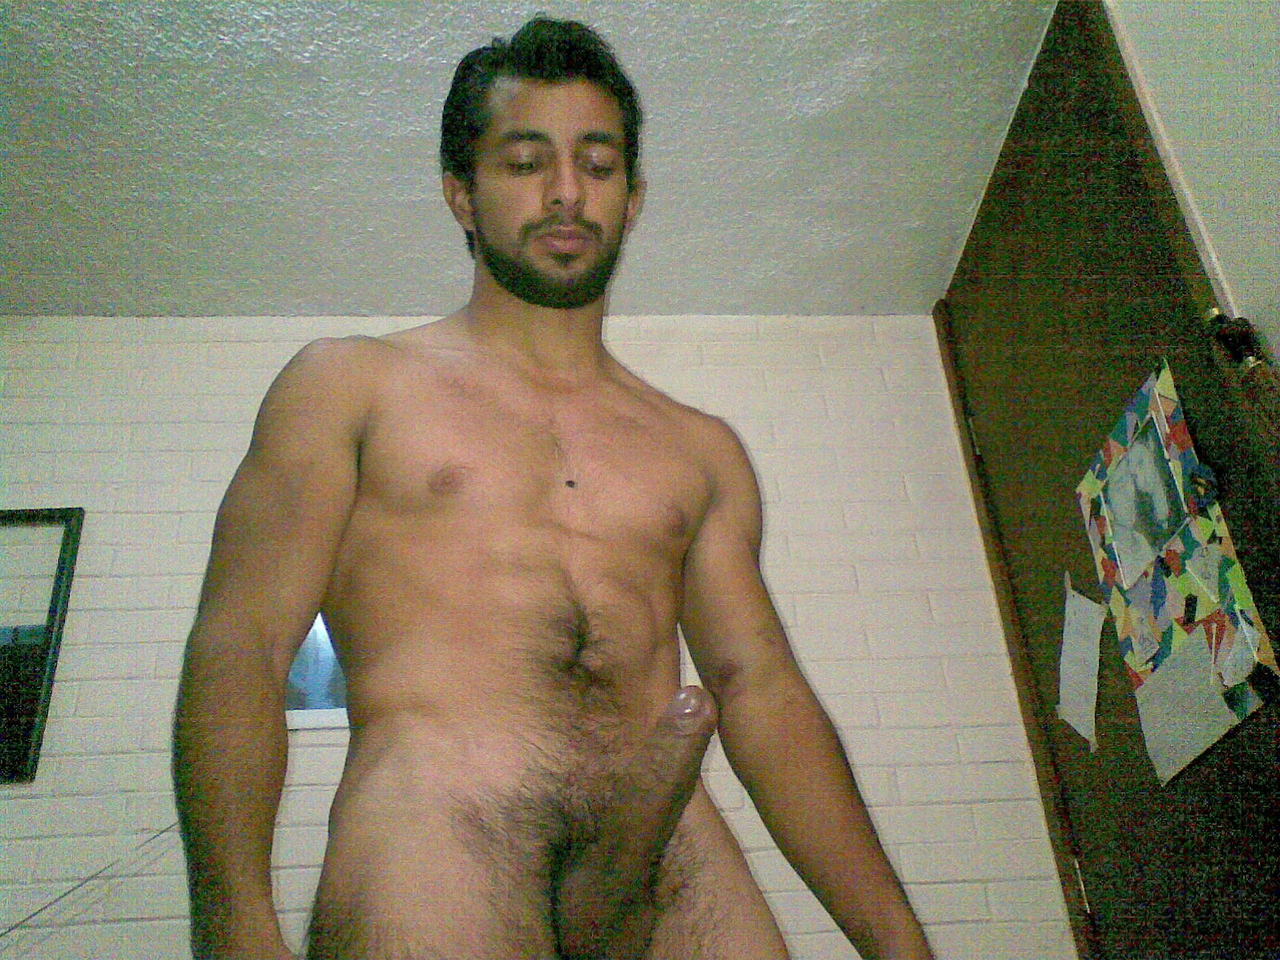 Tamil male actors nude gay sex photos today 6